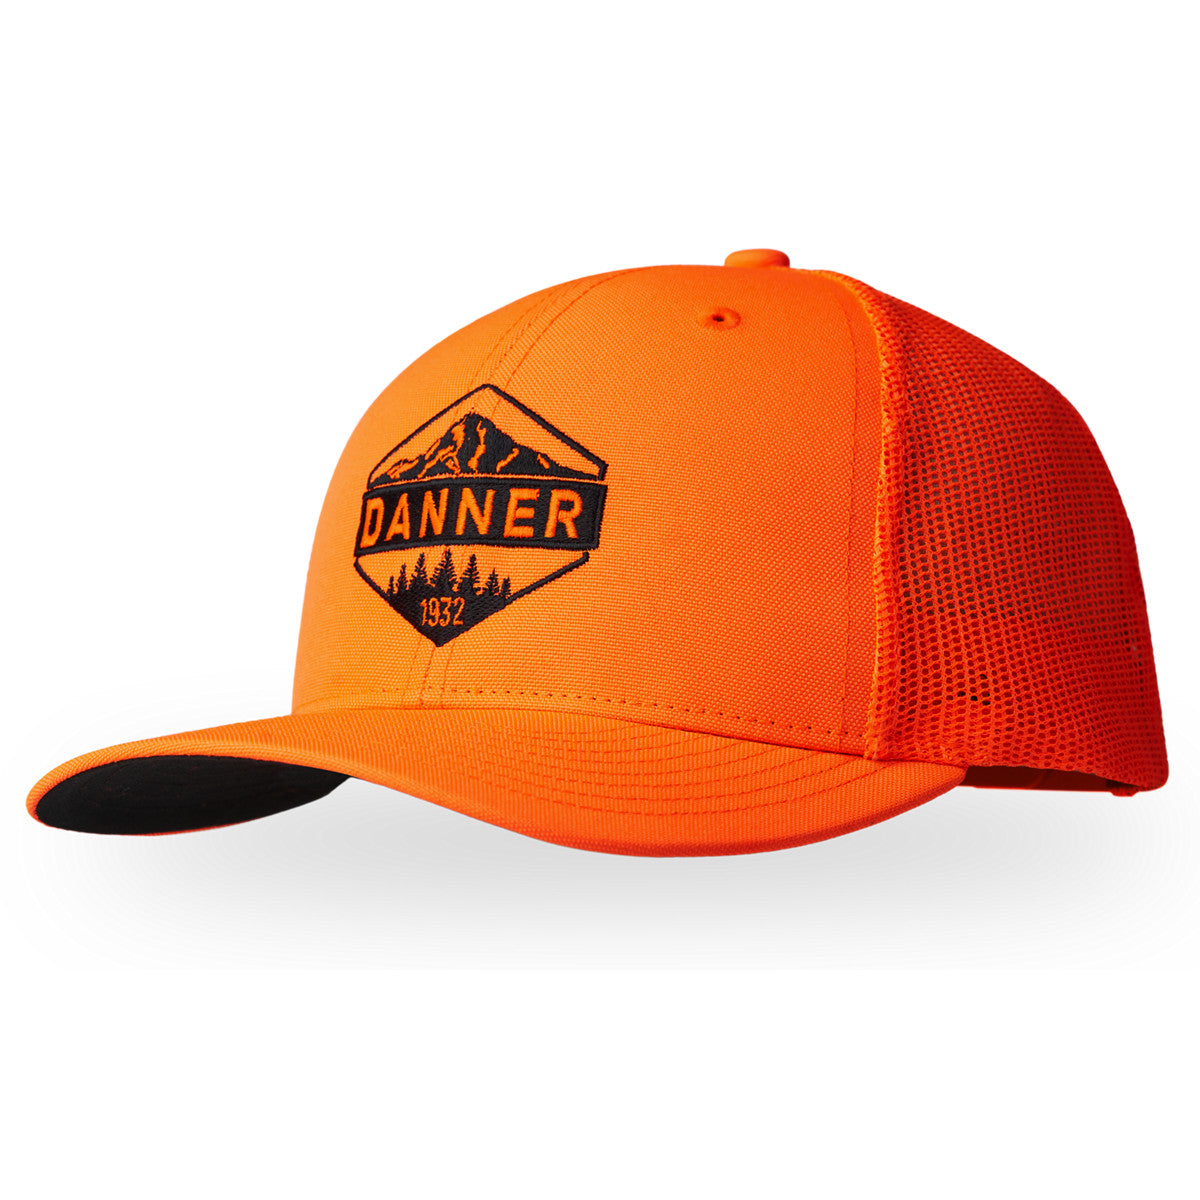 DANNER - Cap - Trucker Cap Blaze Orange